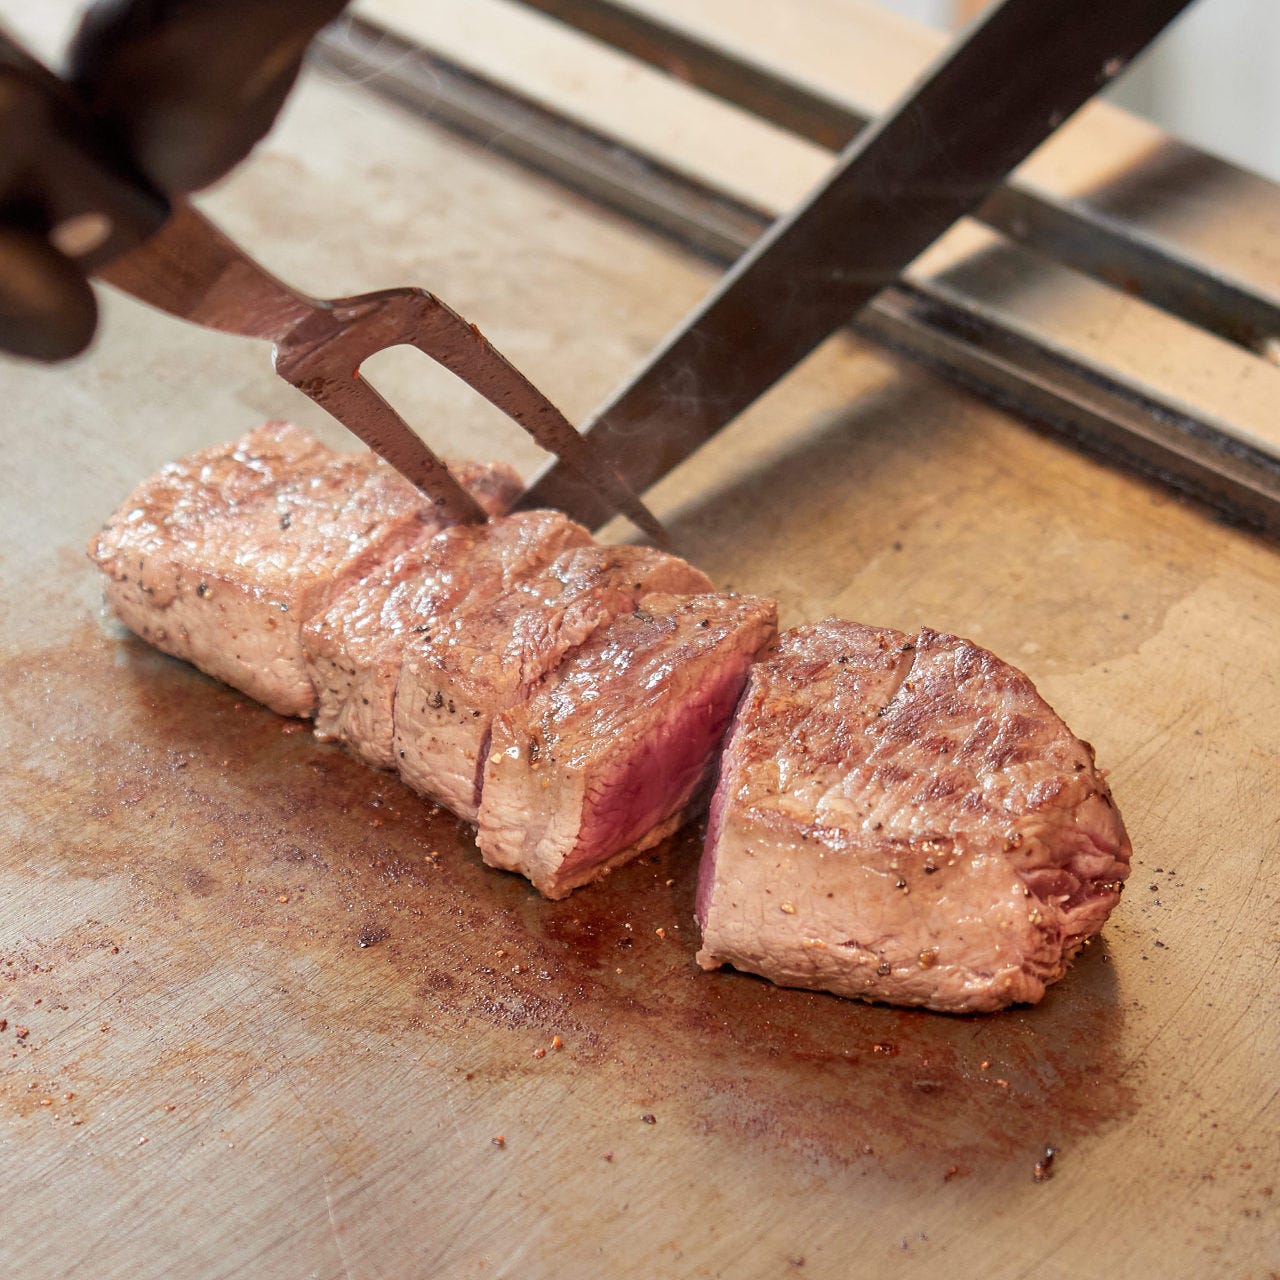 ウルグアイ産ステーキ
こだわりの赤身肉。栄養満点で美容にも◎